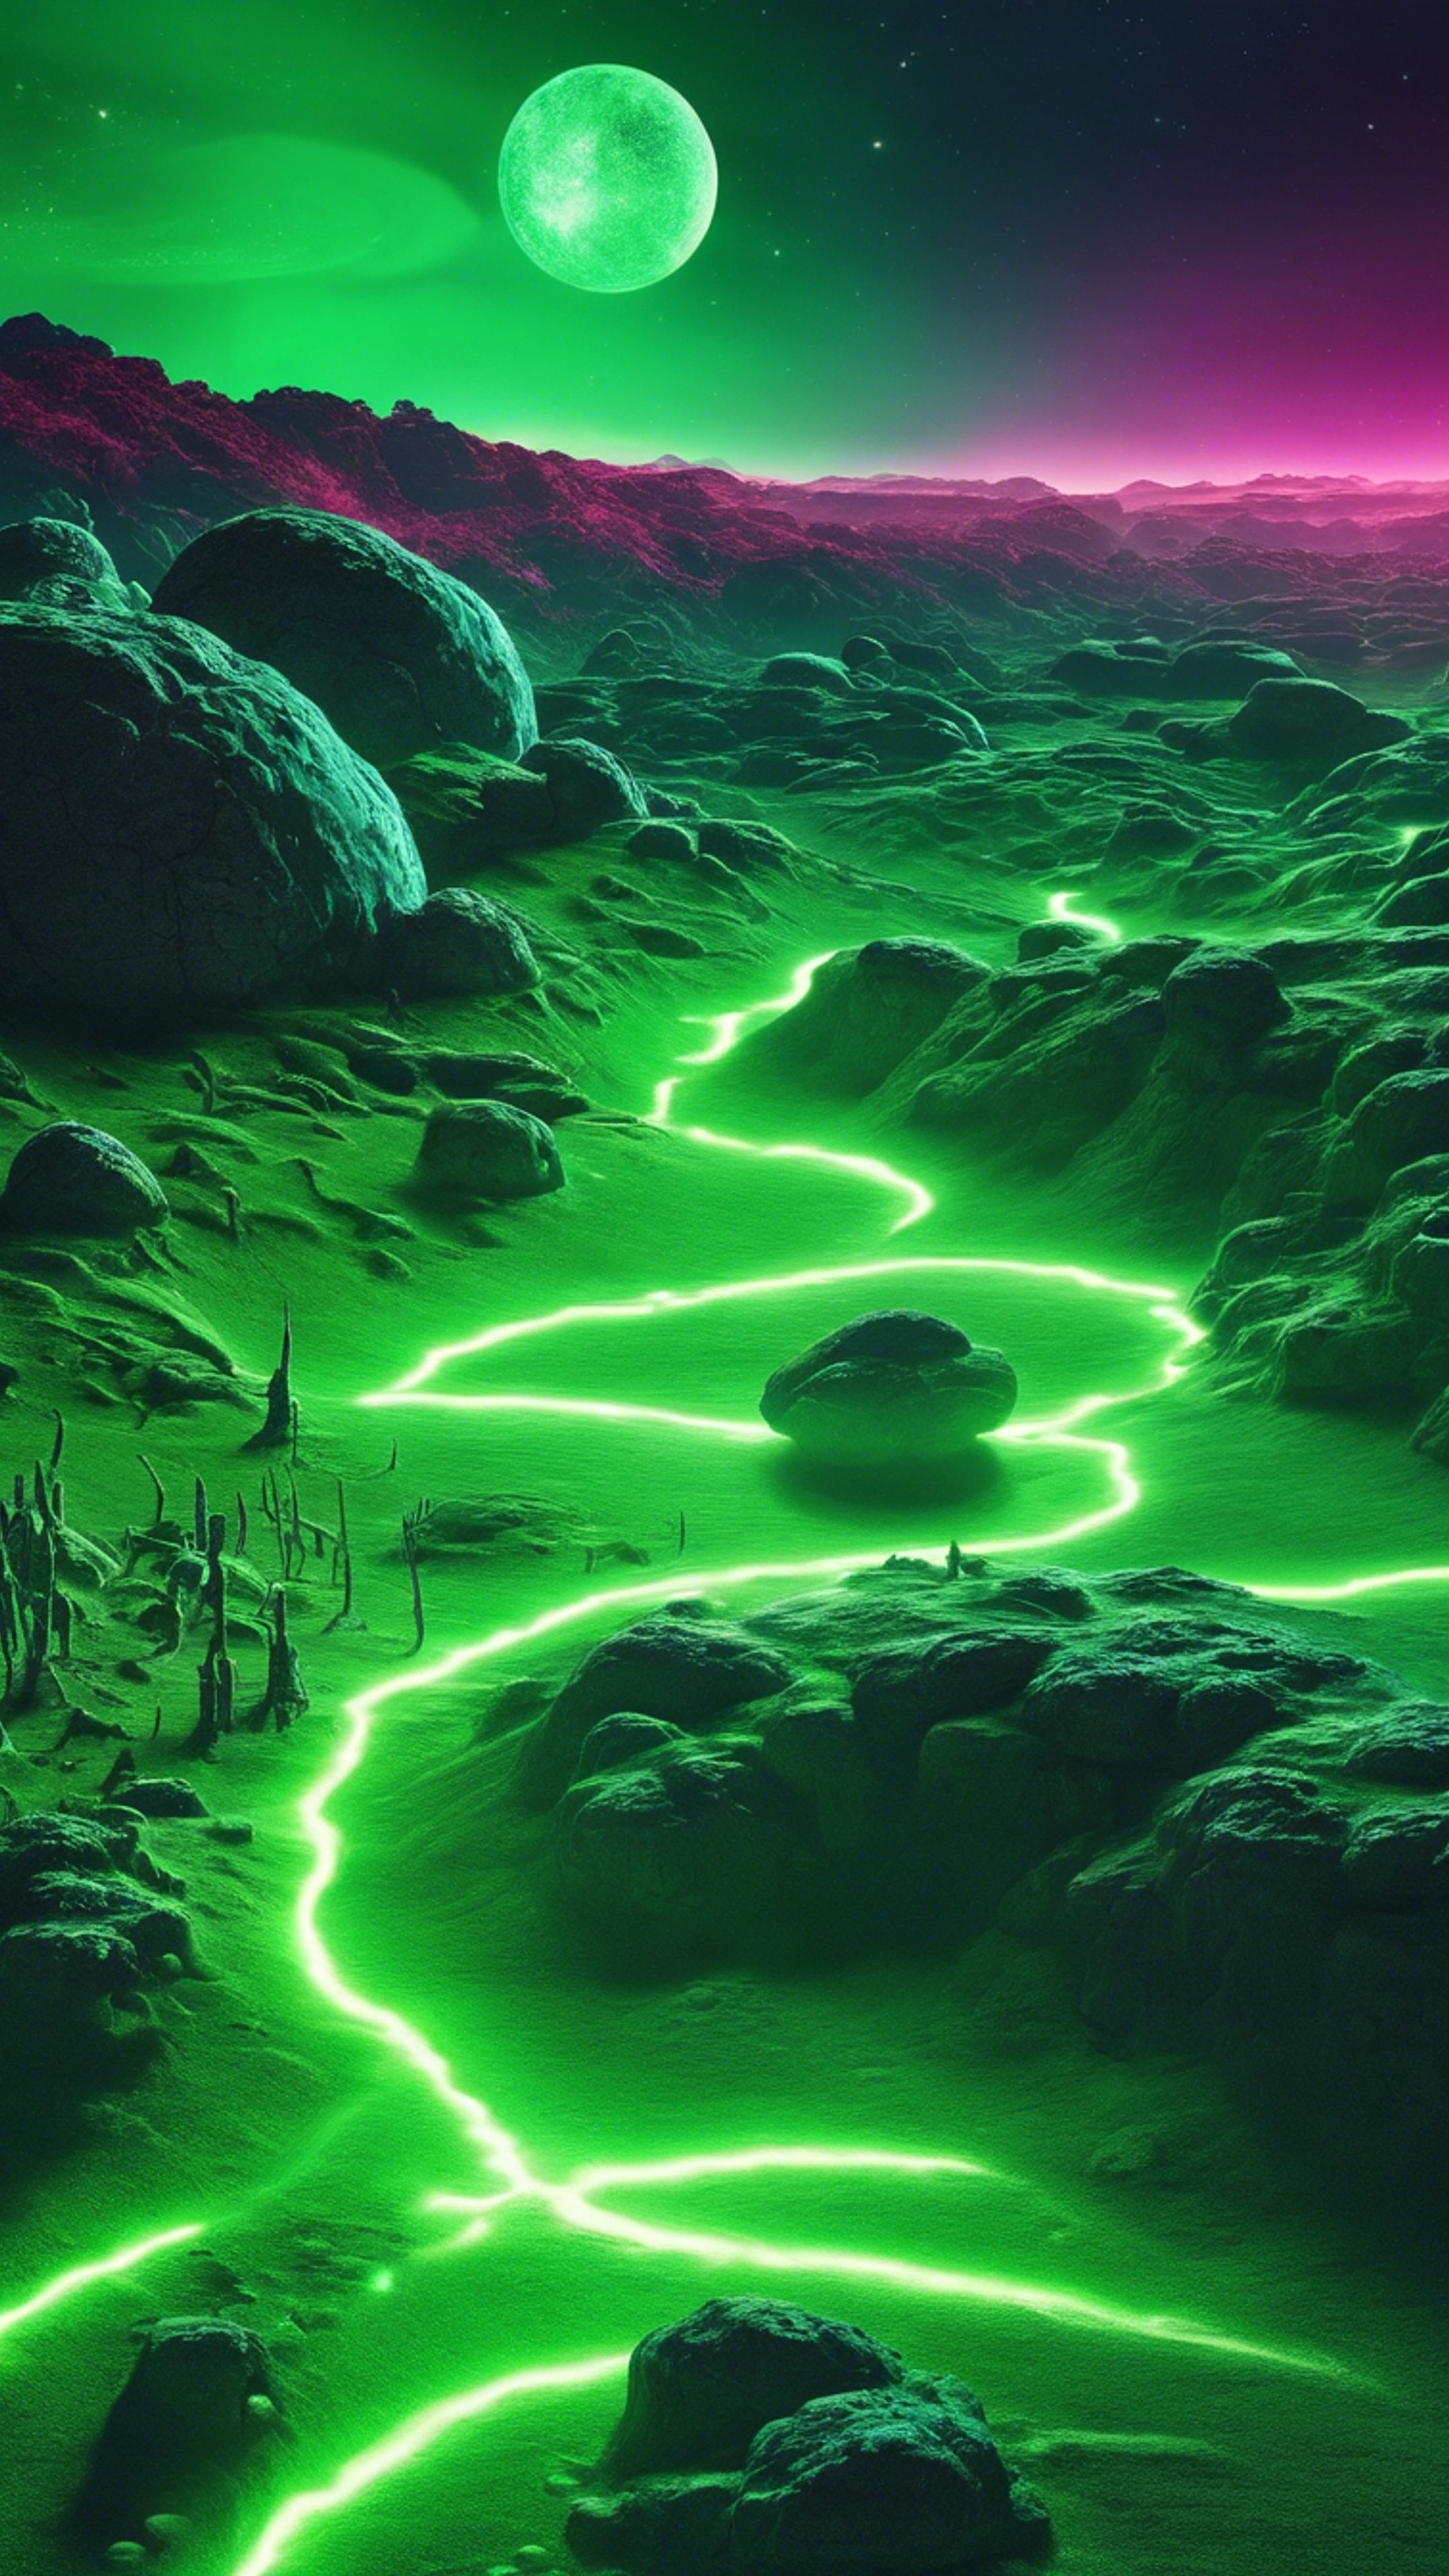 An alien planet landscape illuminated with cool neon green light. Wallpaper[c1d7fd56055c47ca89e3]